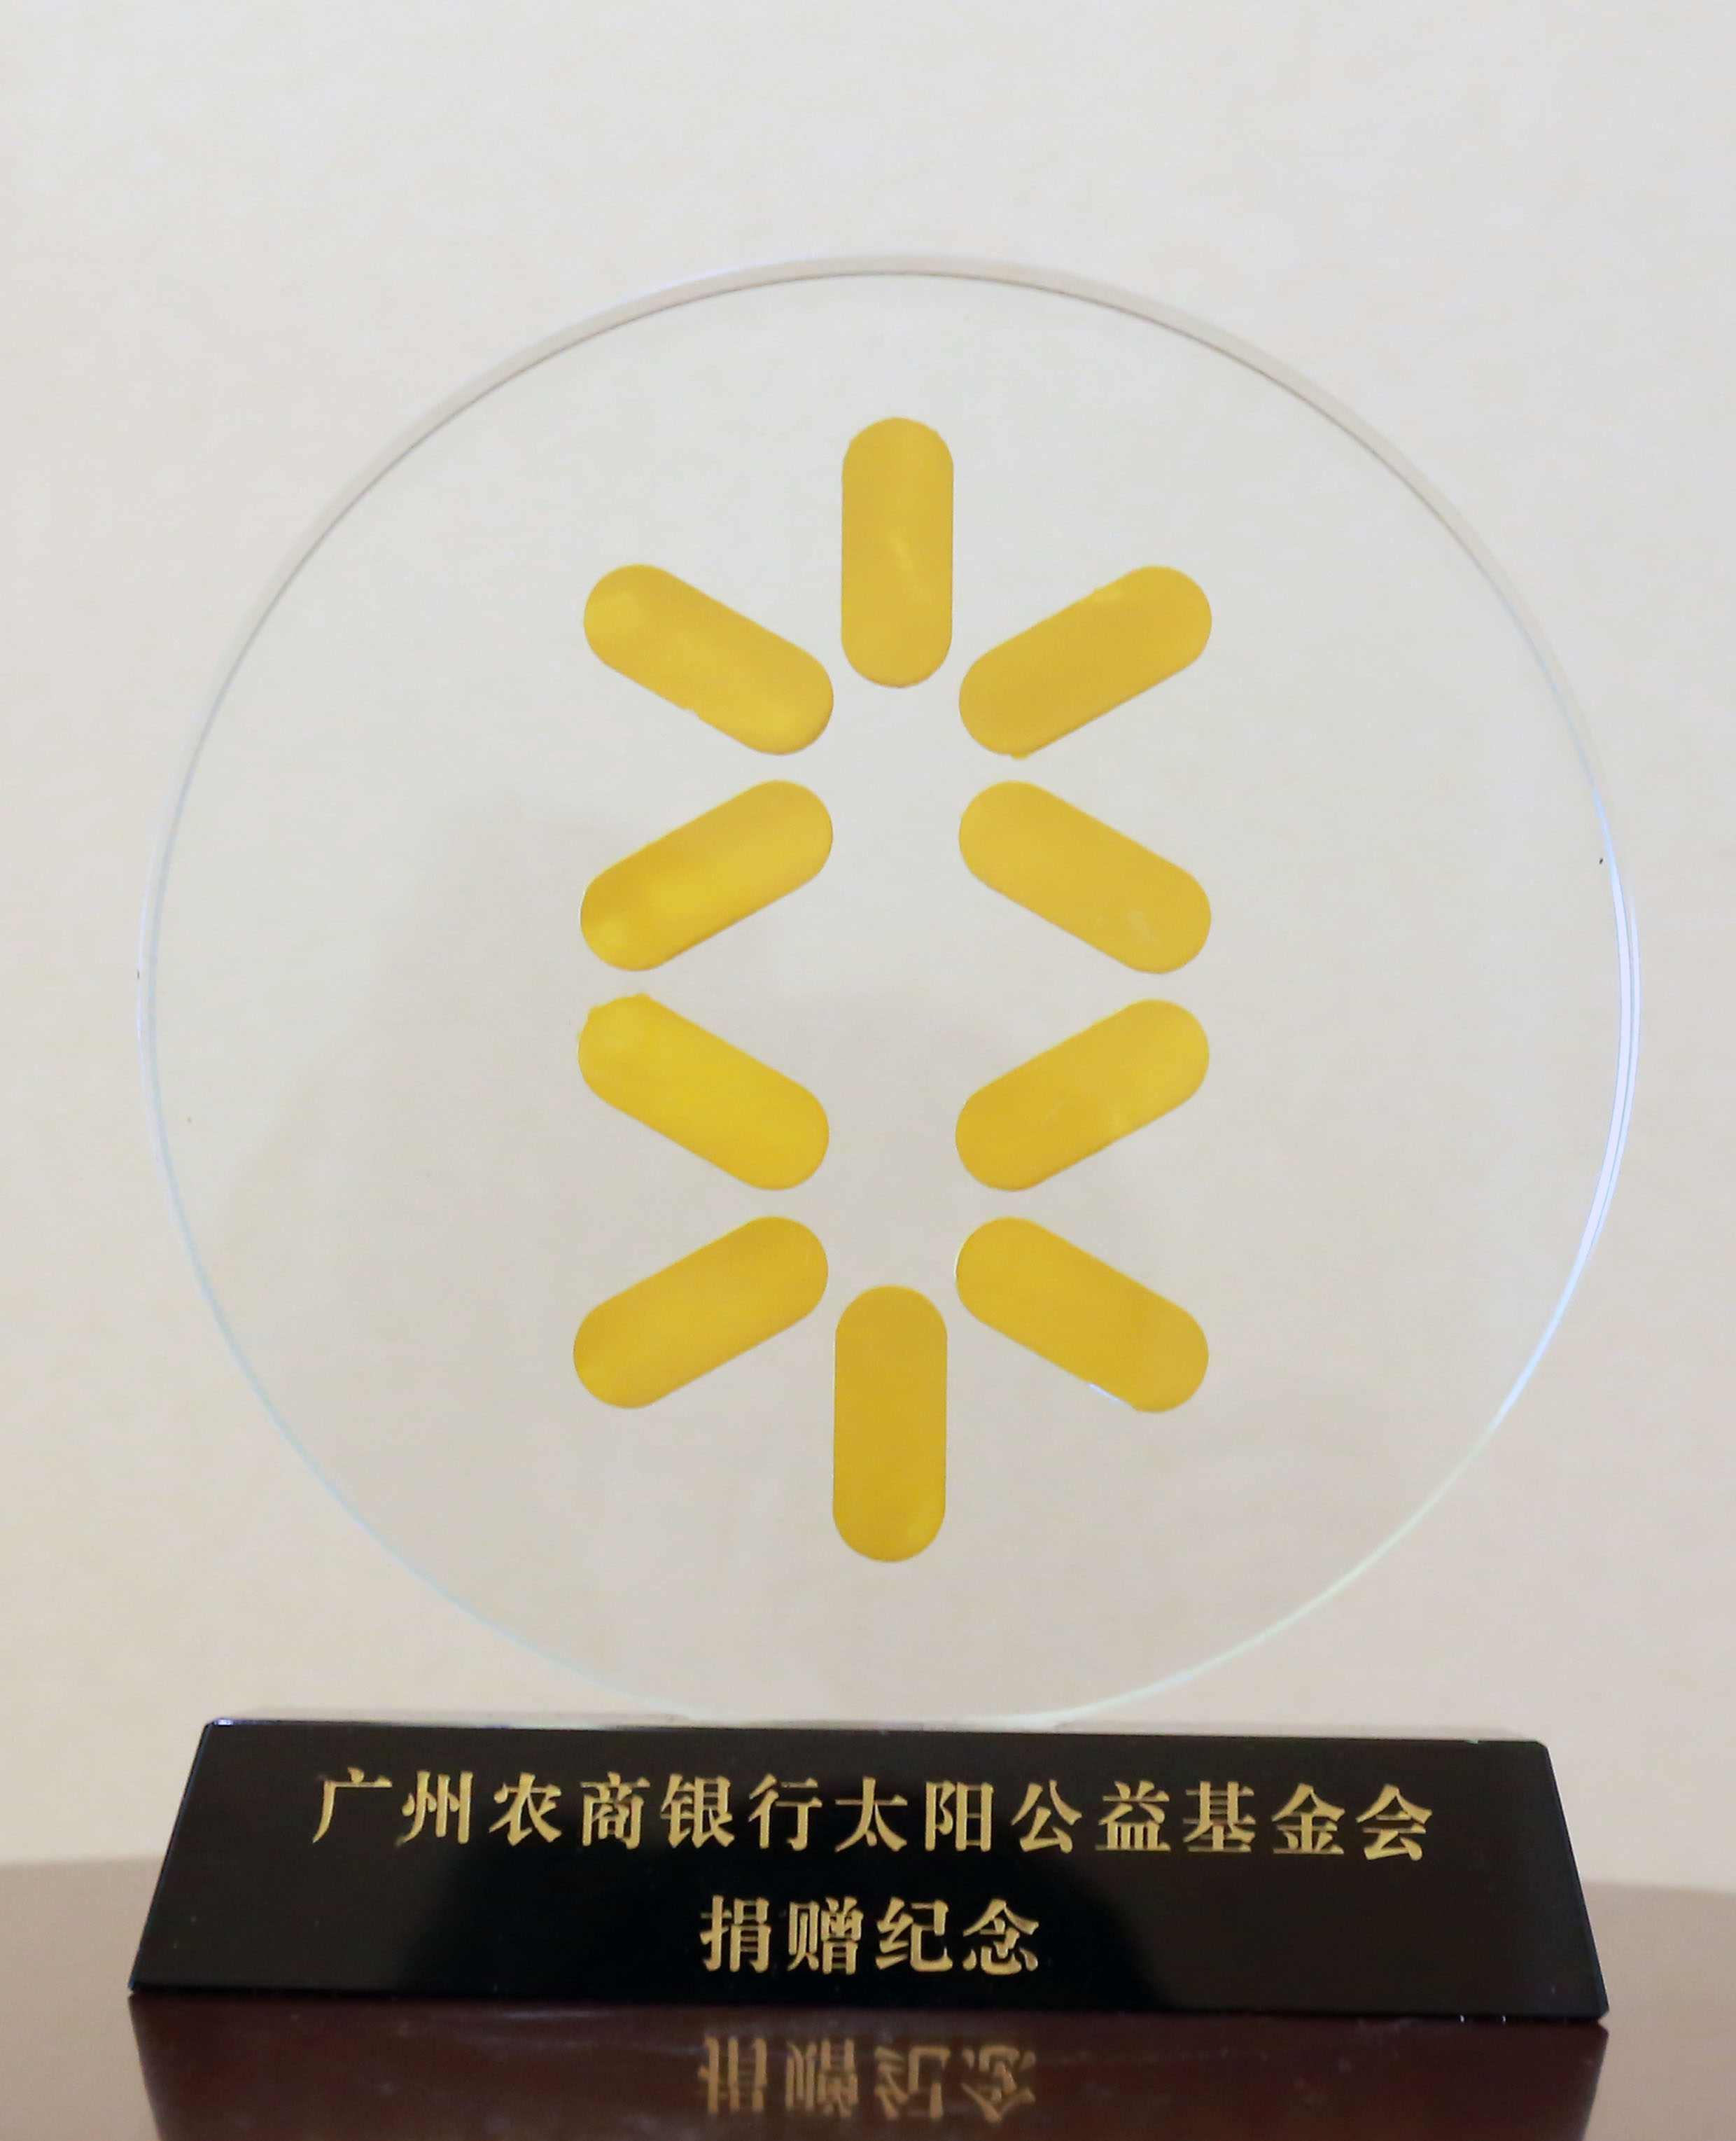 合汇地产 热心慈善和社会公益事业 捐赠广州农商银行太阳基金会